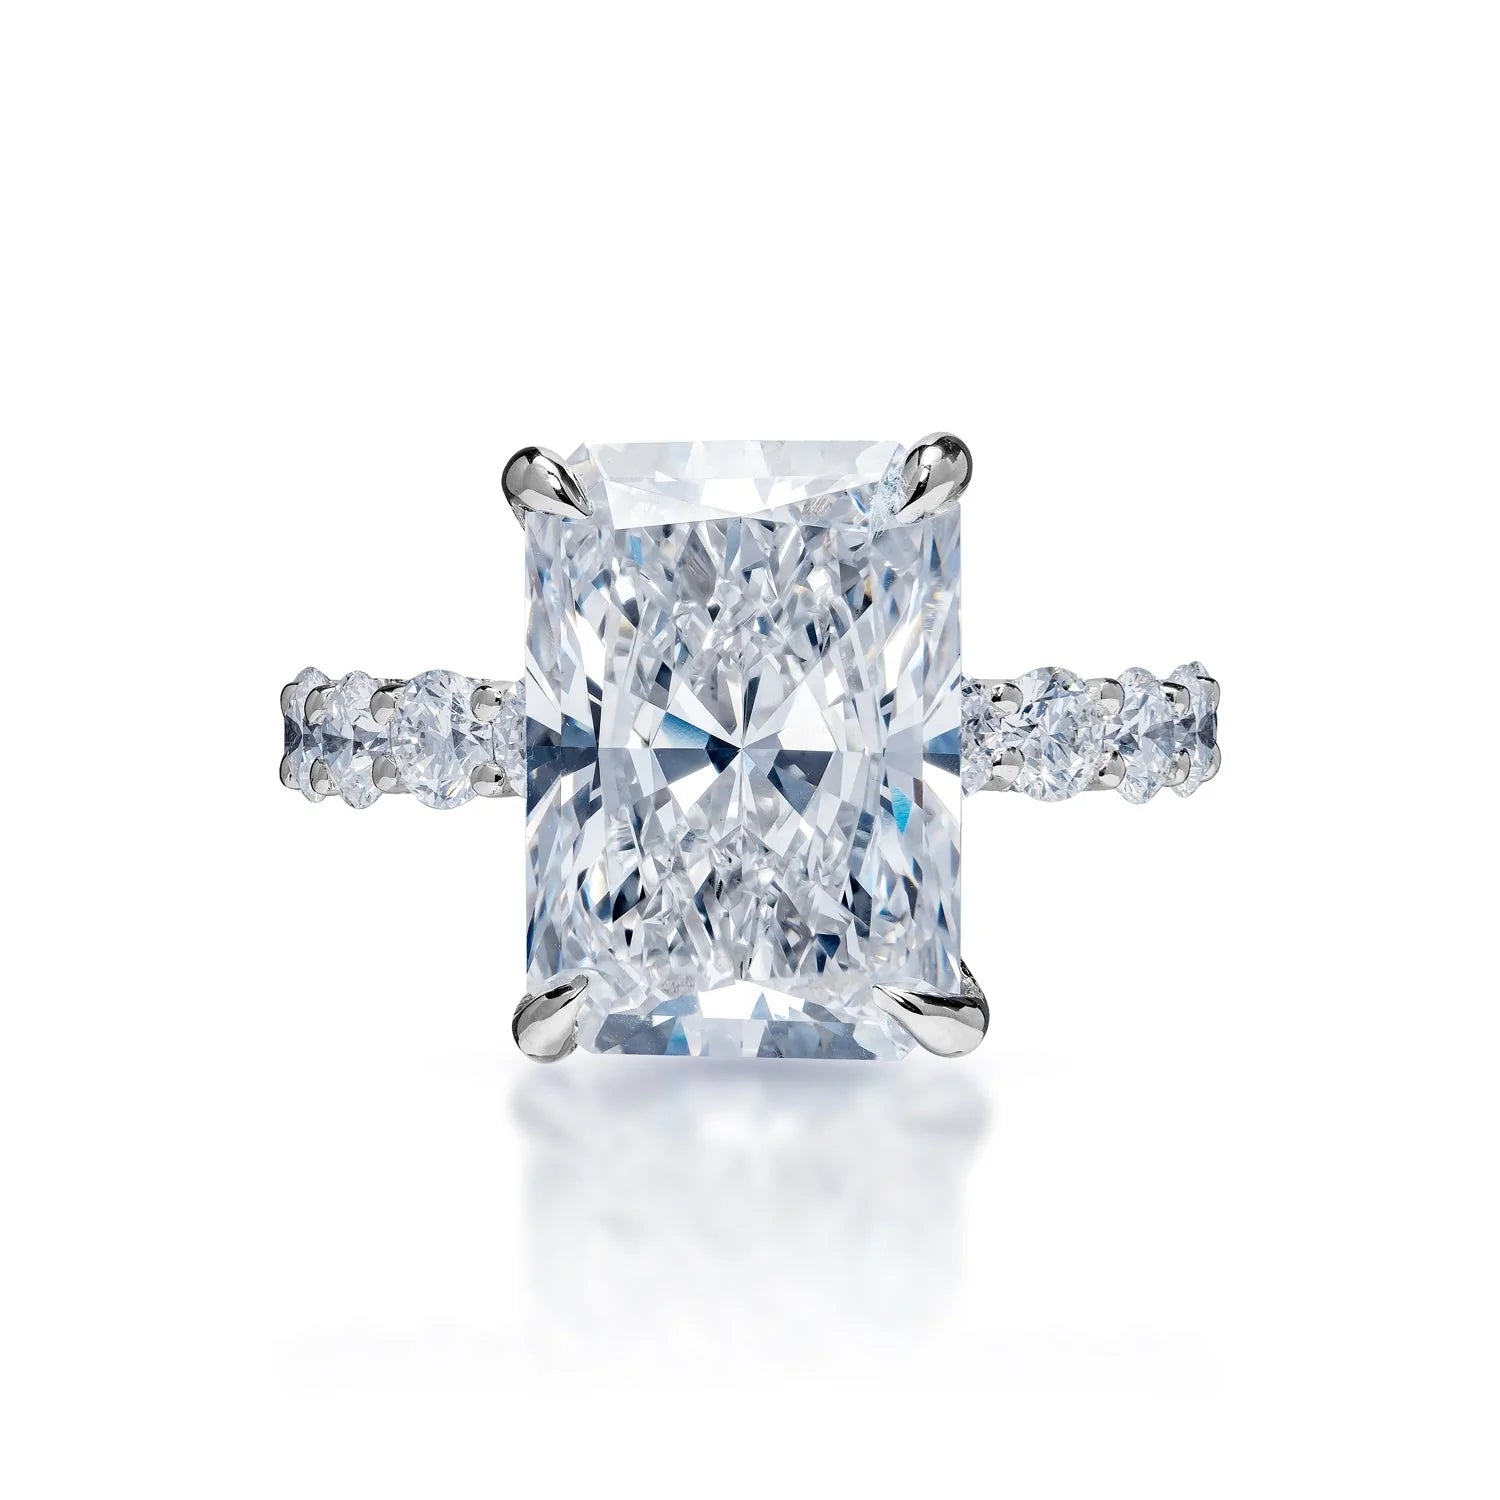 Luna Lab Grown Diamond Ring -14K White Gold, Hidden Halo, 2.5 Carat, – Best  Brilliance